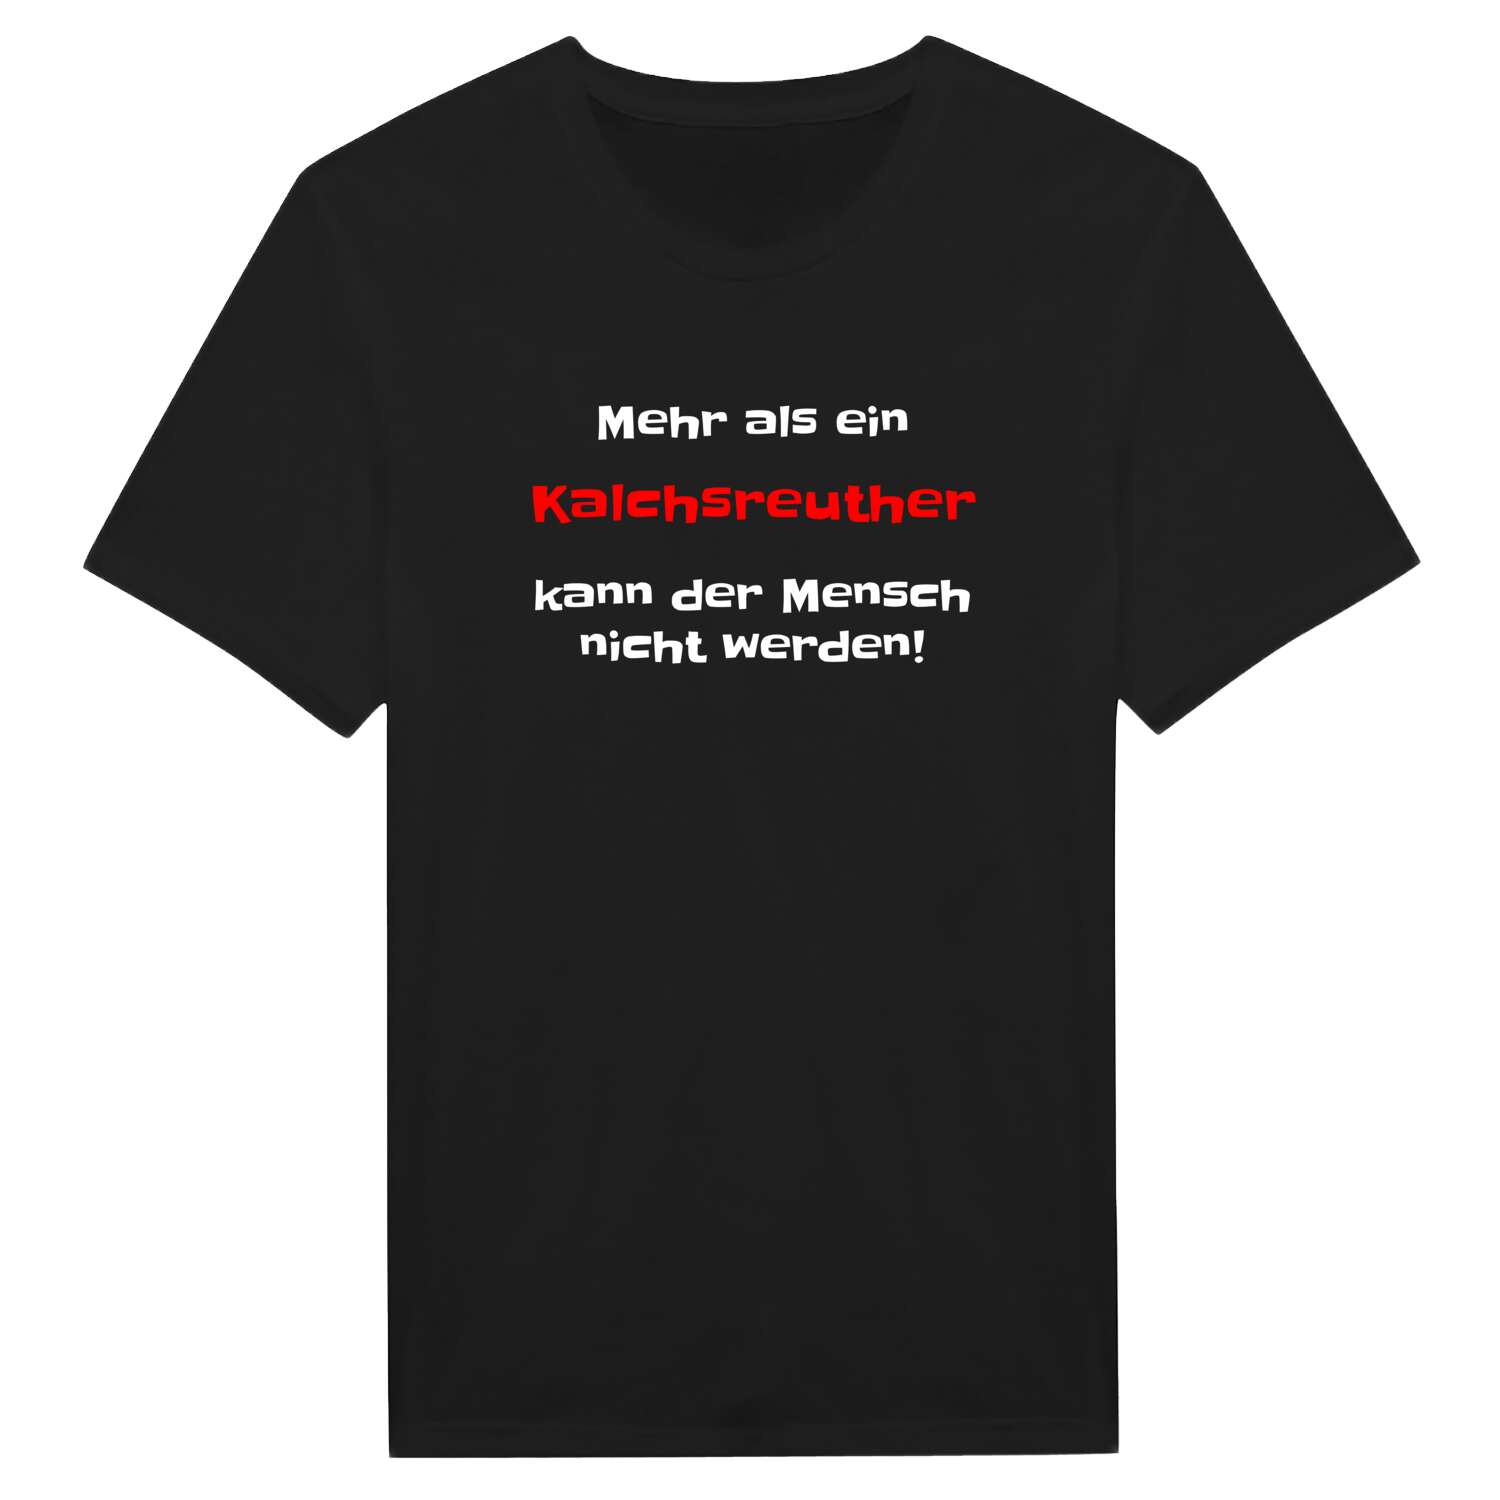 Kalchsreuth T-Shirt »Mehr als ein«